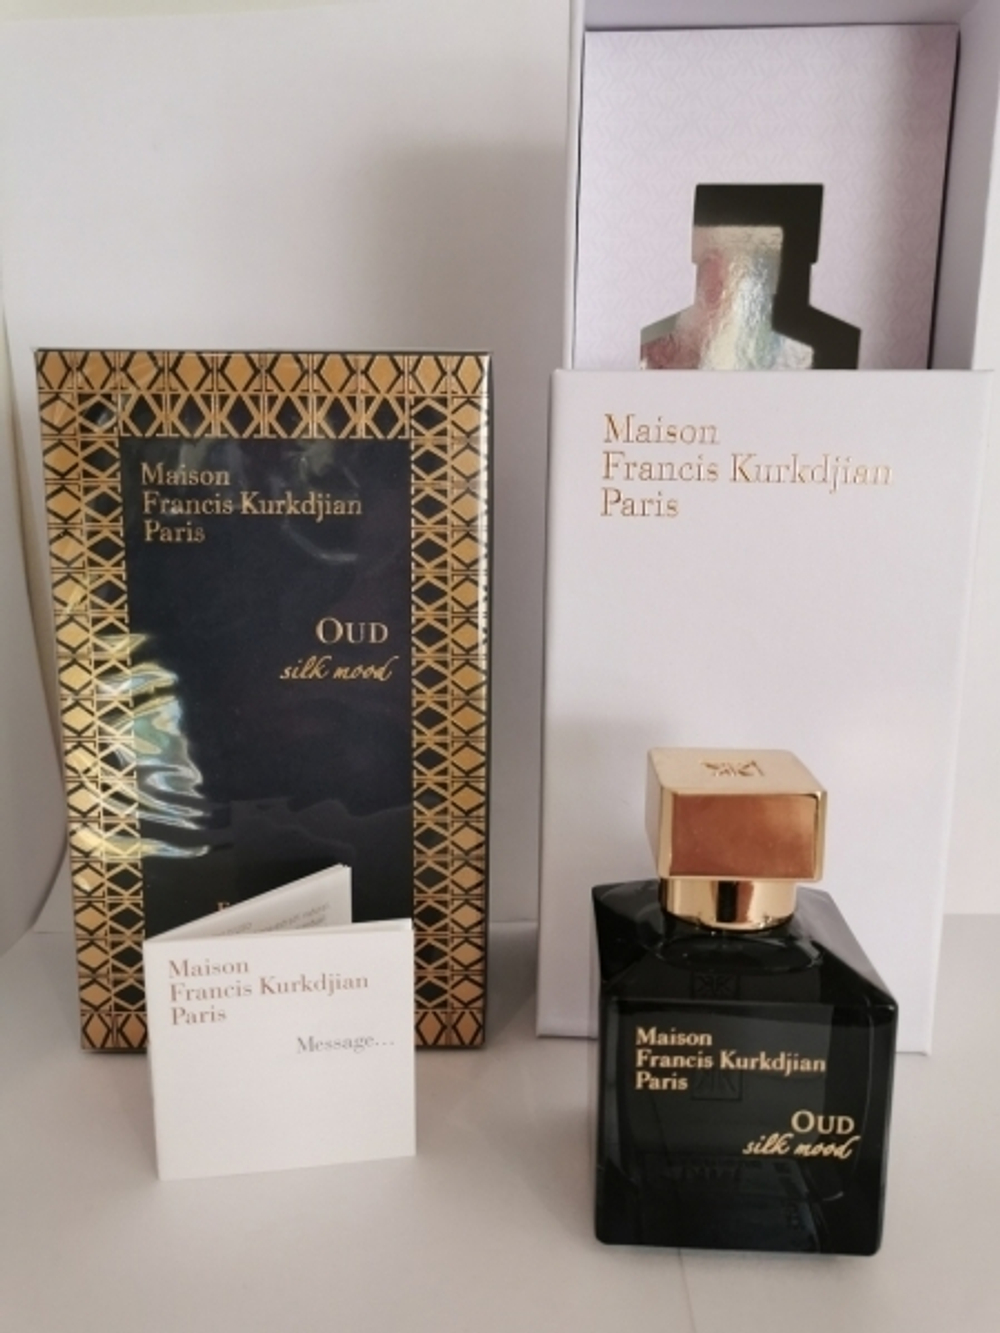 Maison Francis Kurkdjian Paris OUD SILK MOOD 70ml (duty free парфюмерия)